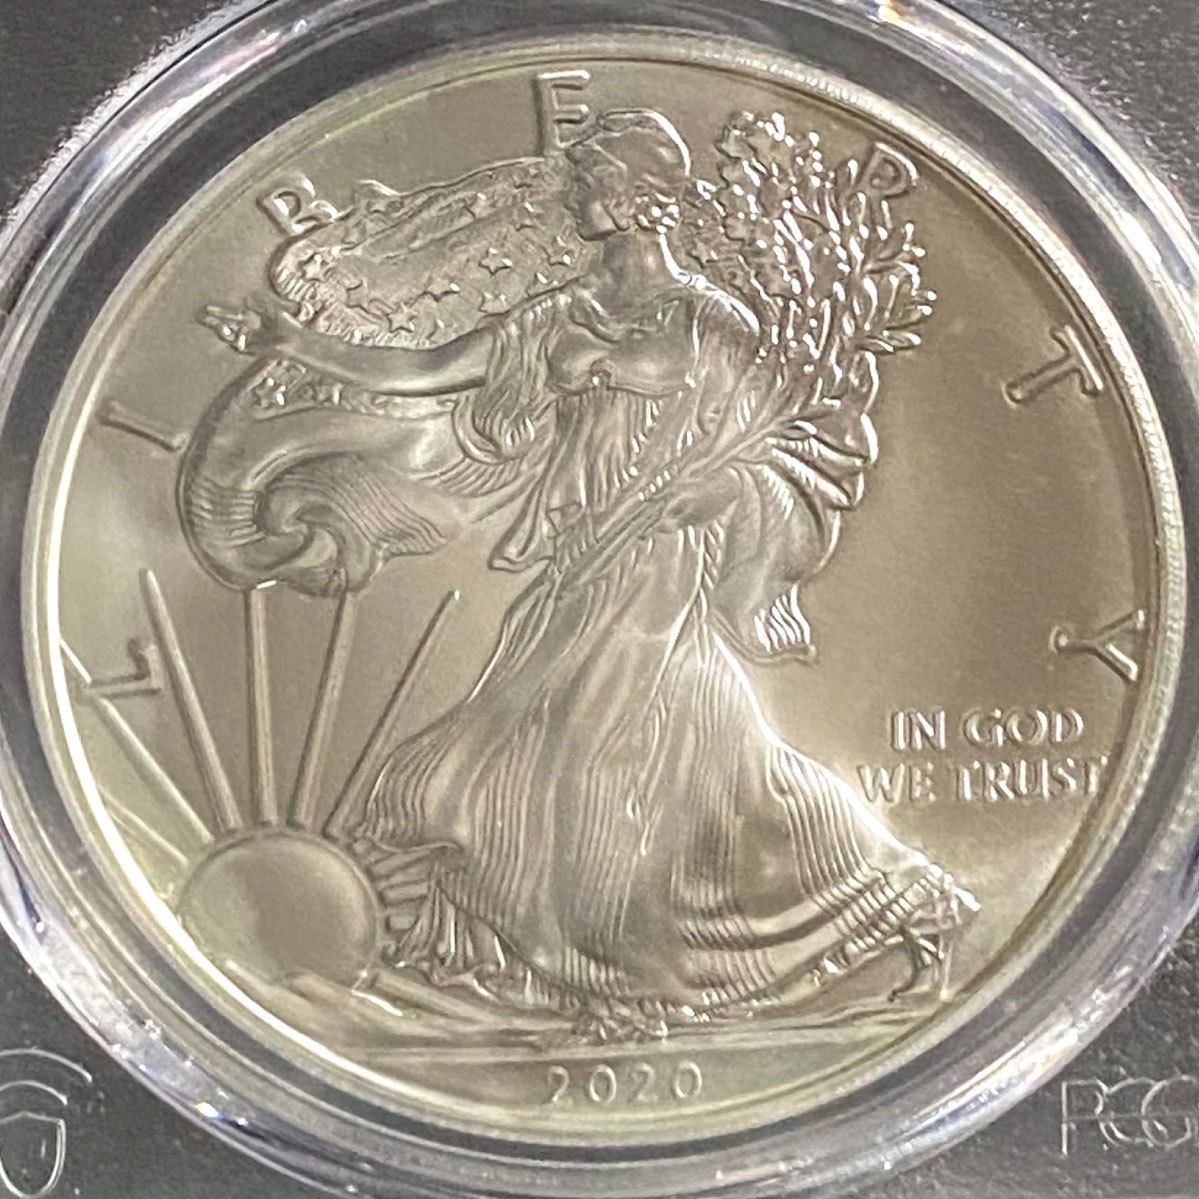 最高鑑定 アメリカ 銀貨 コイン シルバー イーグル 銀貨 PCGS MS70 